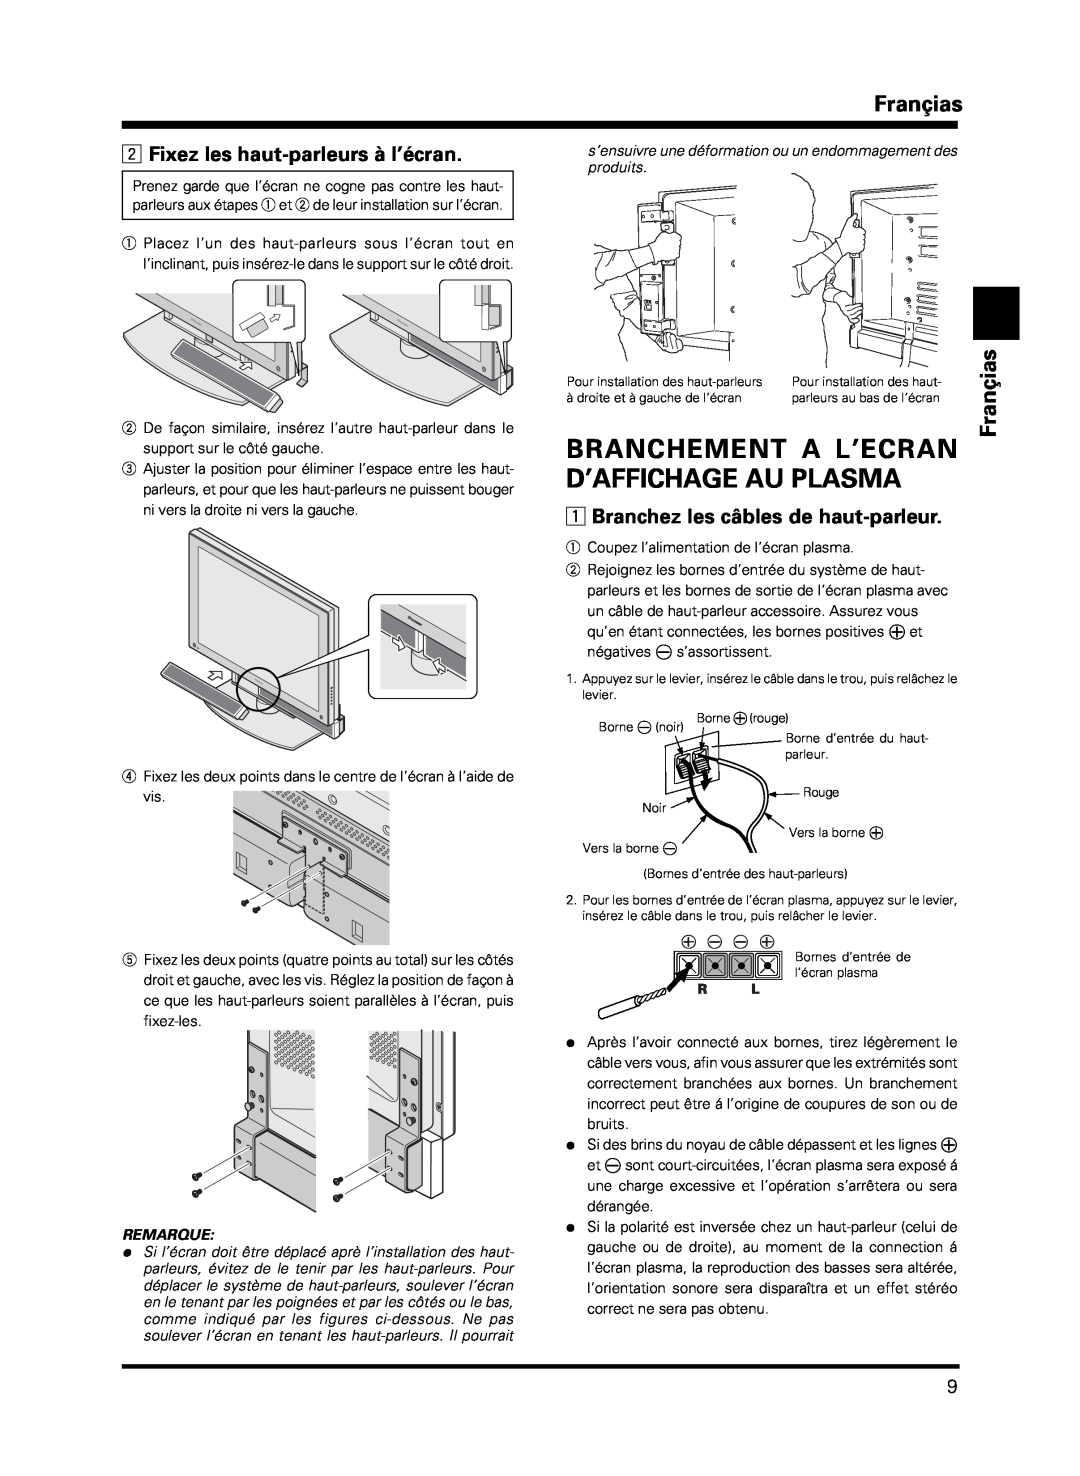 Pioneer PDP-S13-LR manual Branchement A L’Ecran D’Affichage Au Plasma, Branchez les câbles de haut-parleur, Françias 